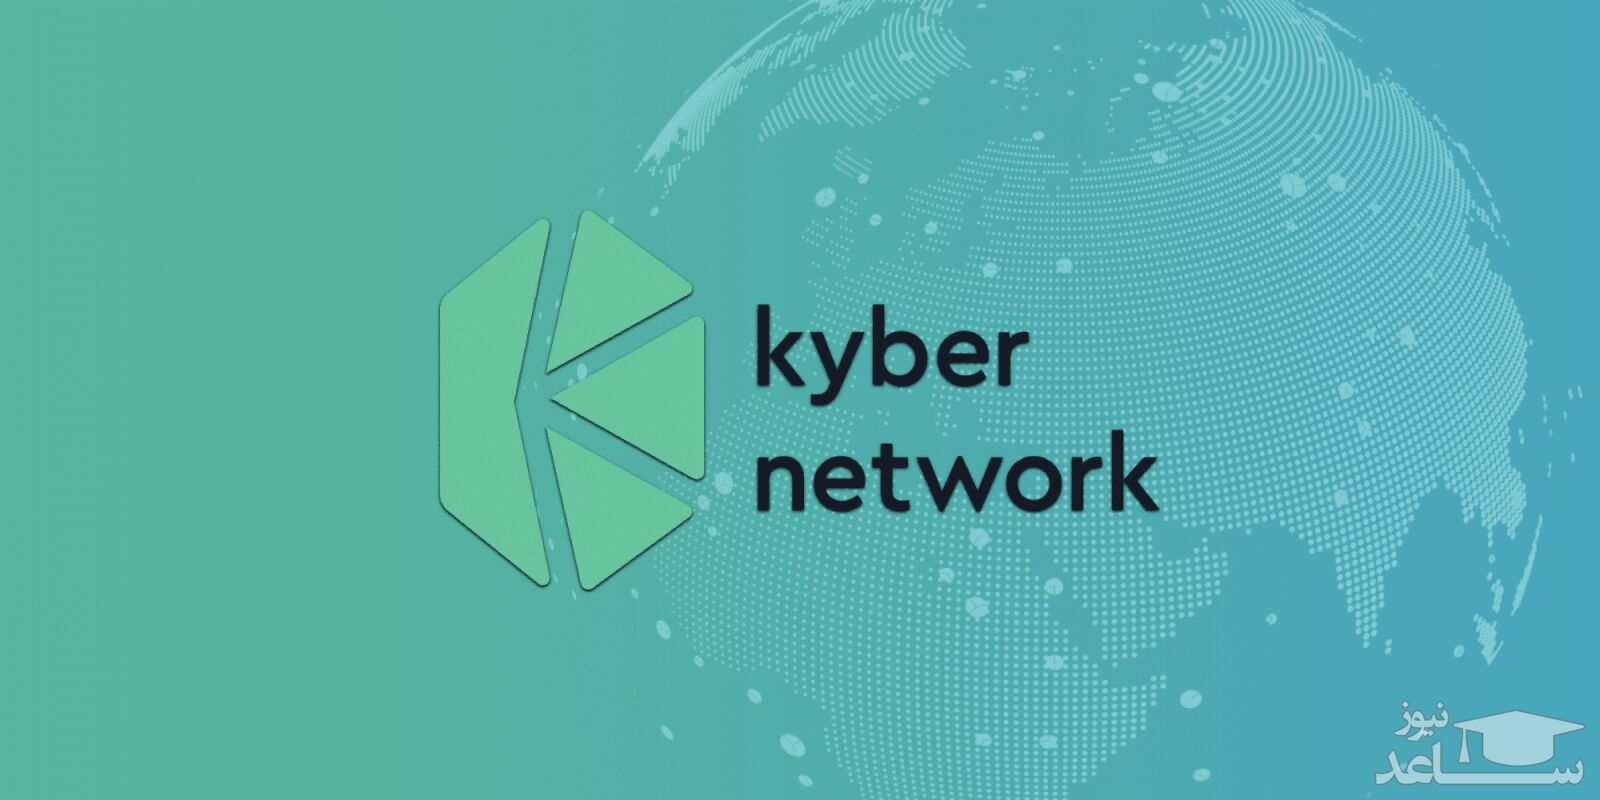 آشنایی با ارز دیجیتال کایبر نتورک Kyber network